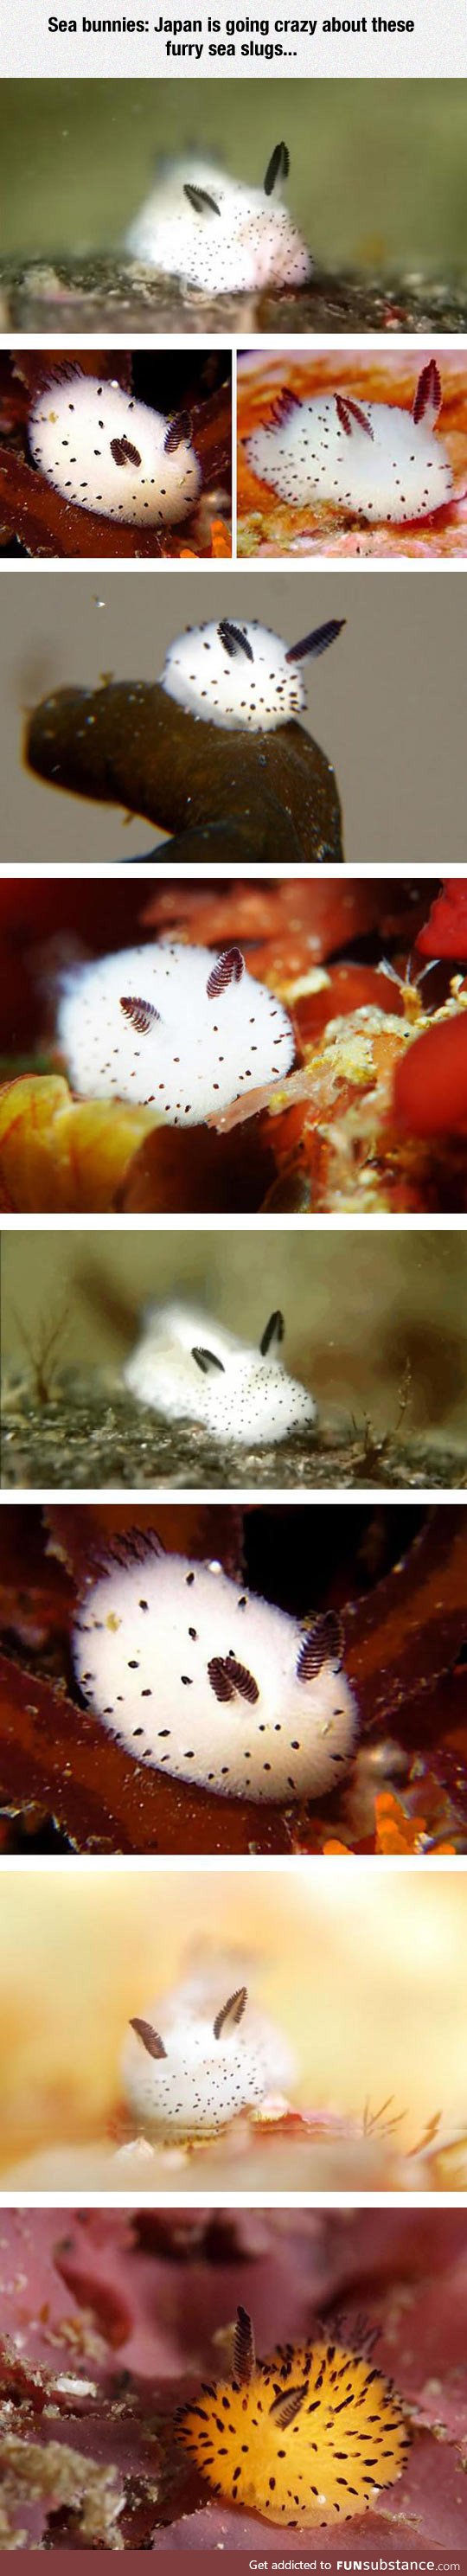 Such adorable sea bunnies